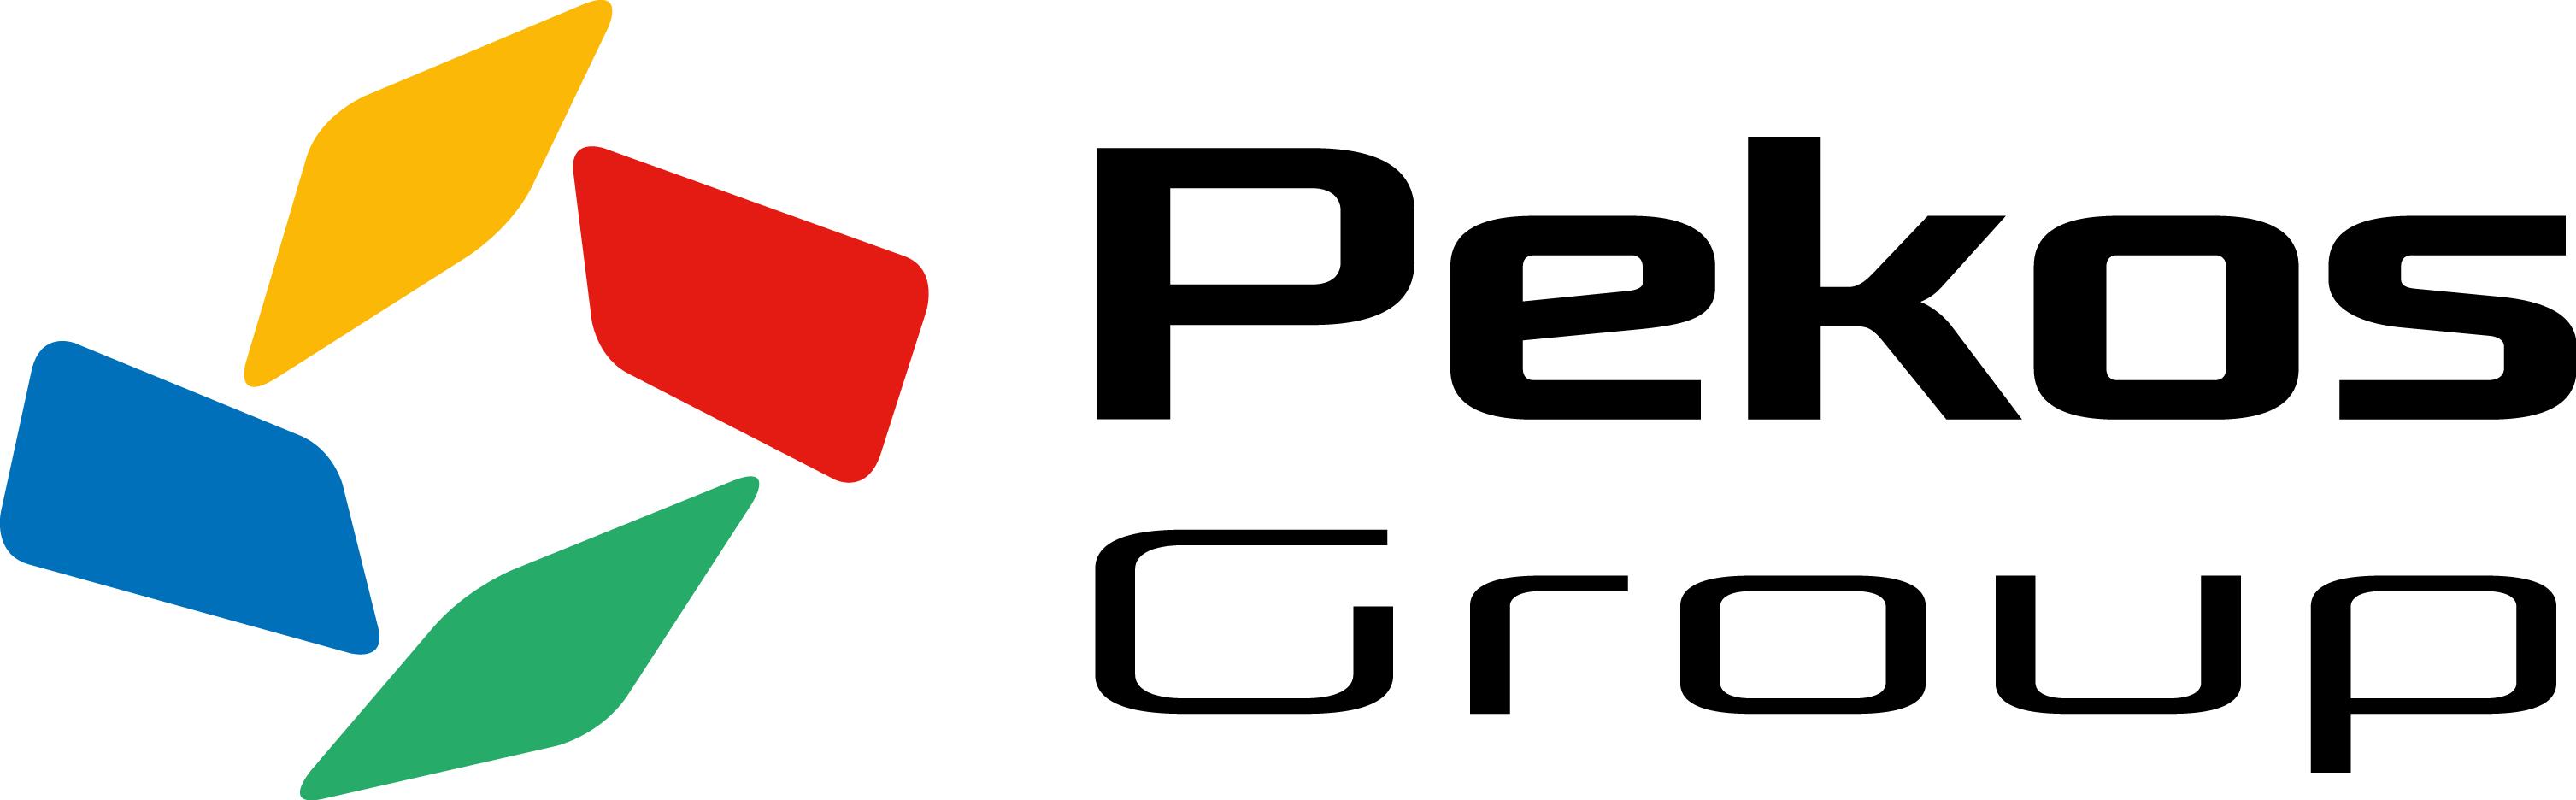 Pekos Europe Group